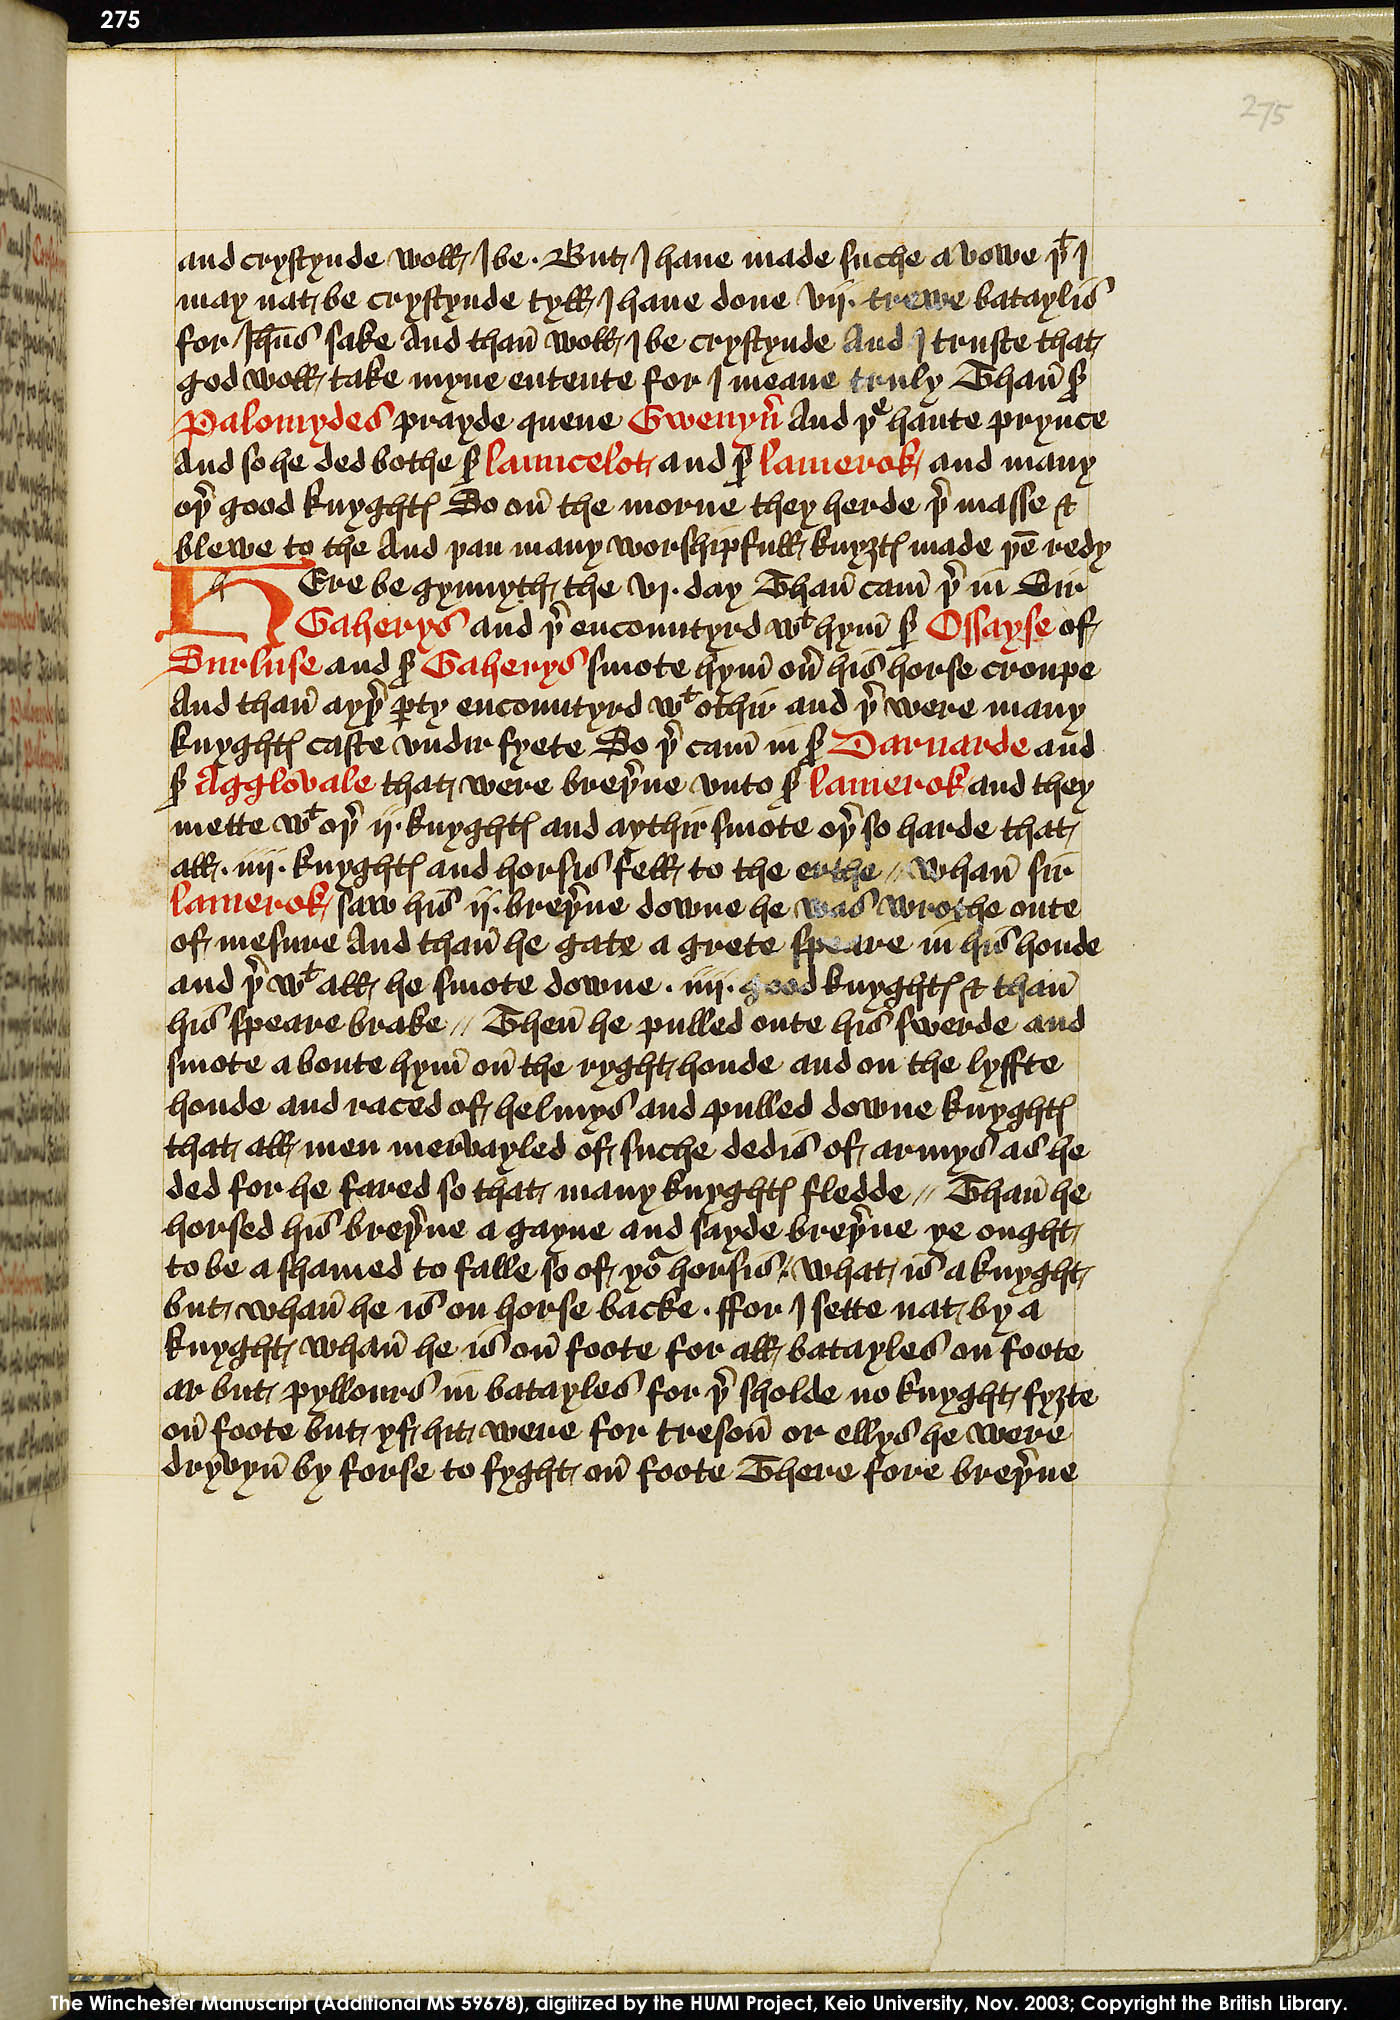 Folio 275r